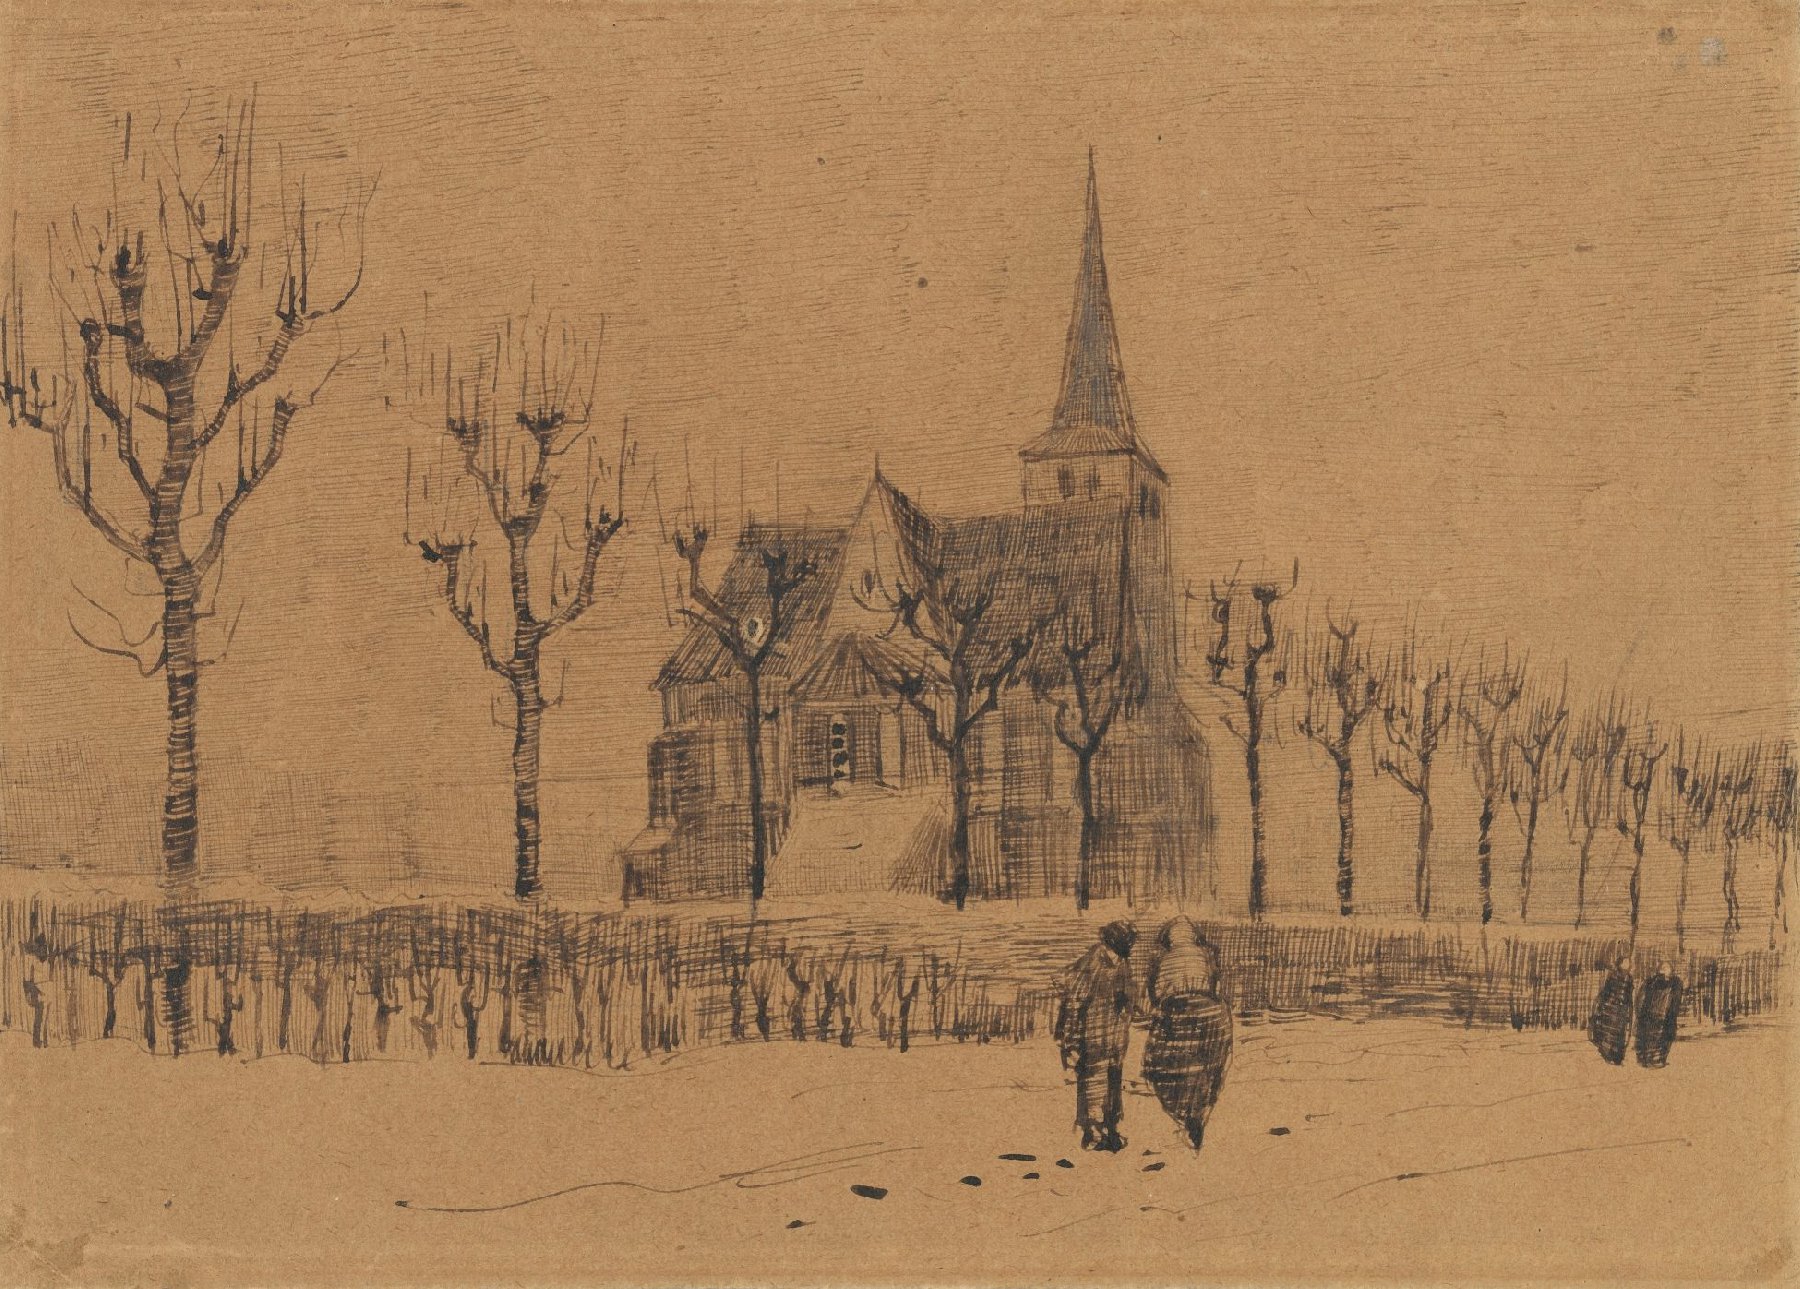 Landschap met kerk Vincent van Gogh (1853 - 1890), Nuenen, december 1883